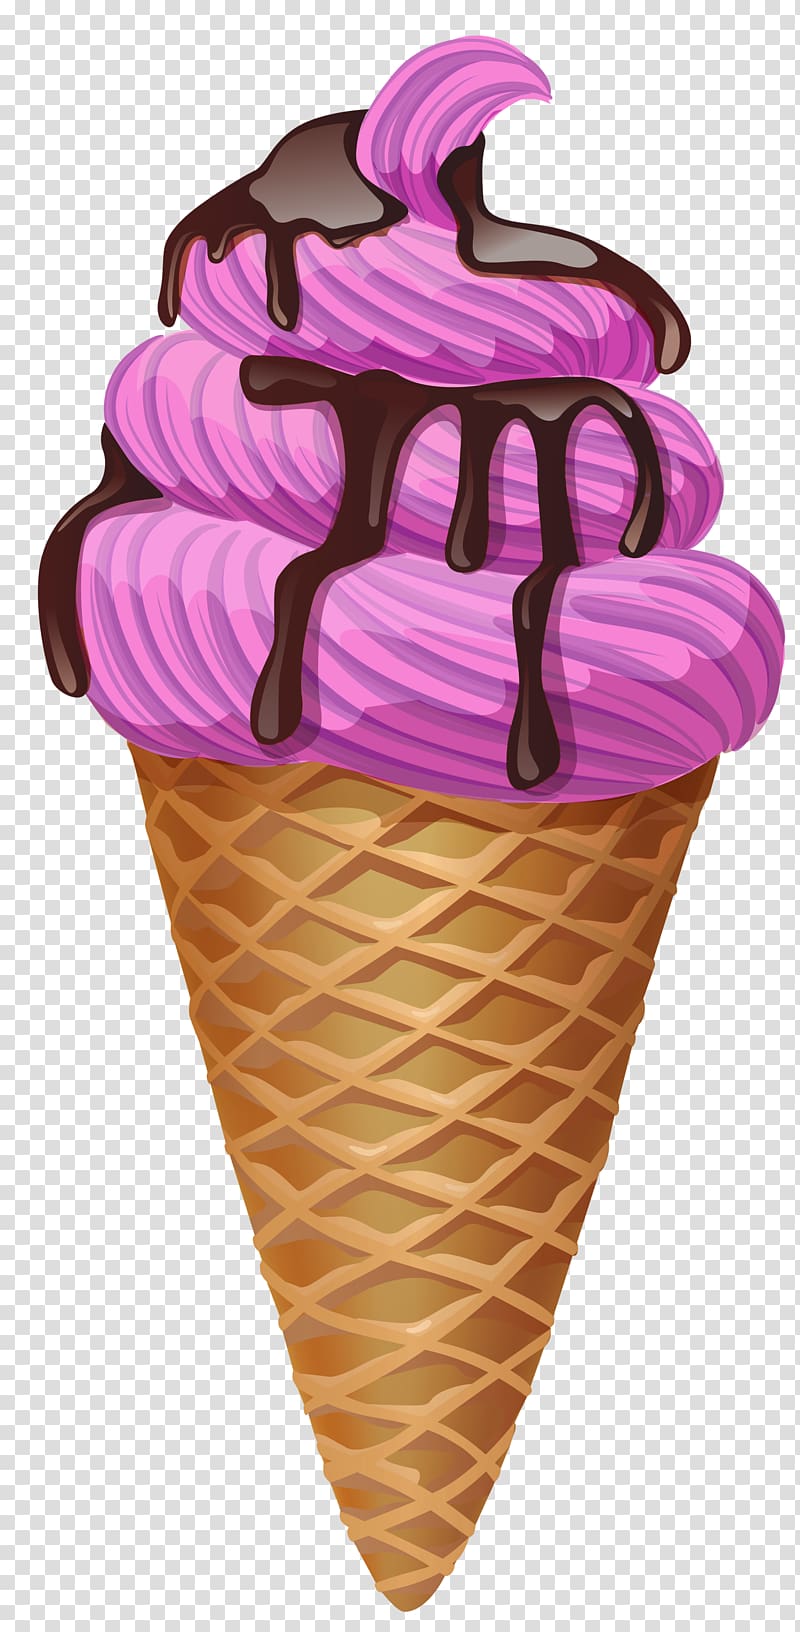 Ice cream cones chocolate. Sundae clipart soft serve